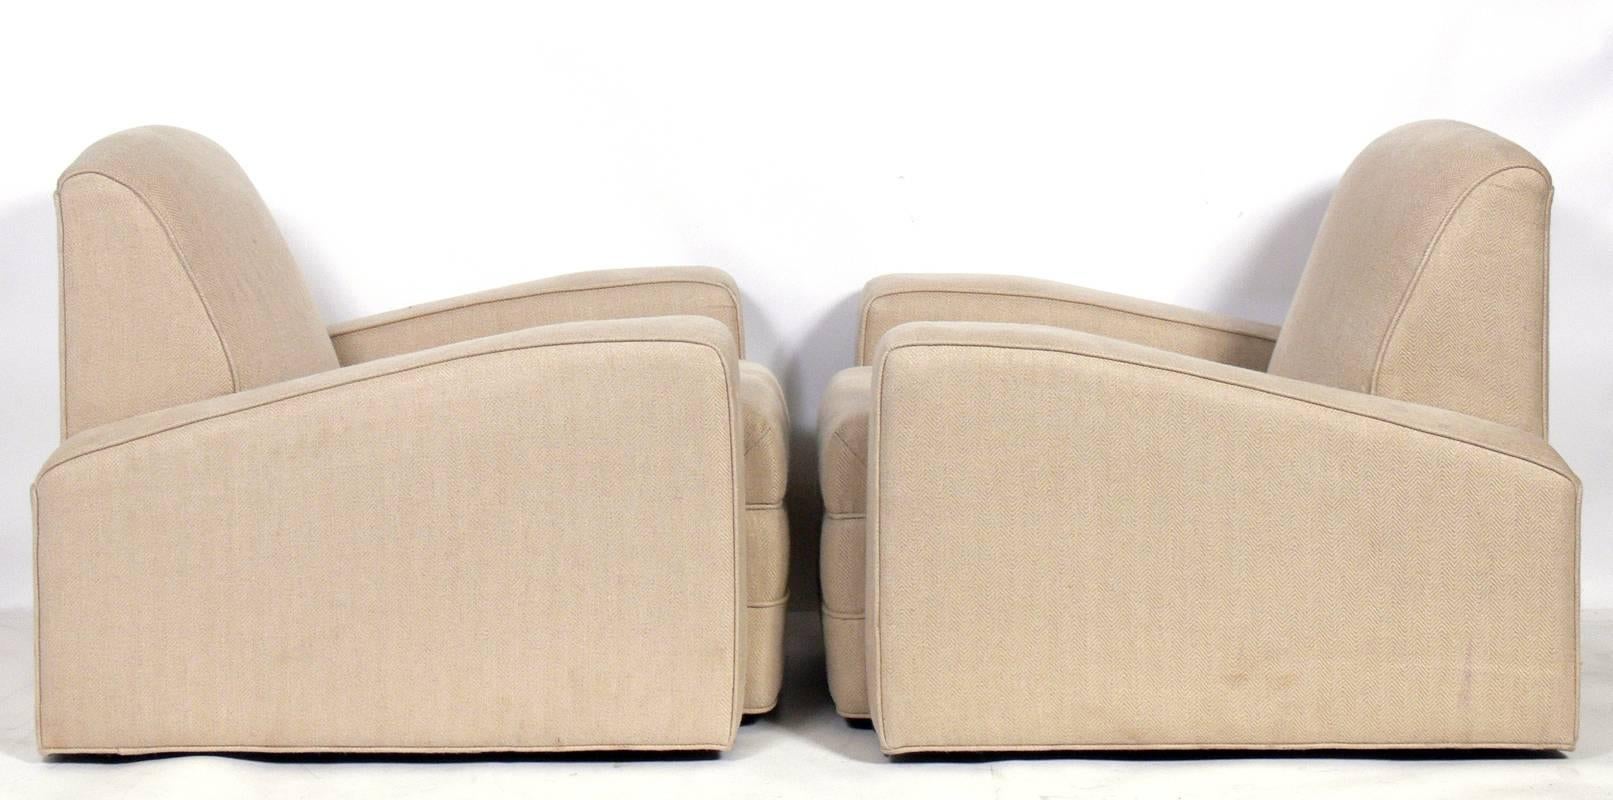 Paire de chaises longues basses Art Déco, françaises, années 1930. Ils ont une forme basse chic. Ils sont actuellement en cours de re-tapisserie et peuvent être complétés dans votre tissu. Le prix indiqué ci-dessous comprend le remeublement dans